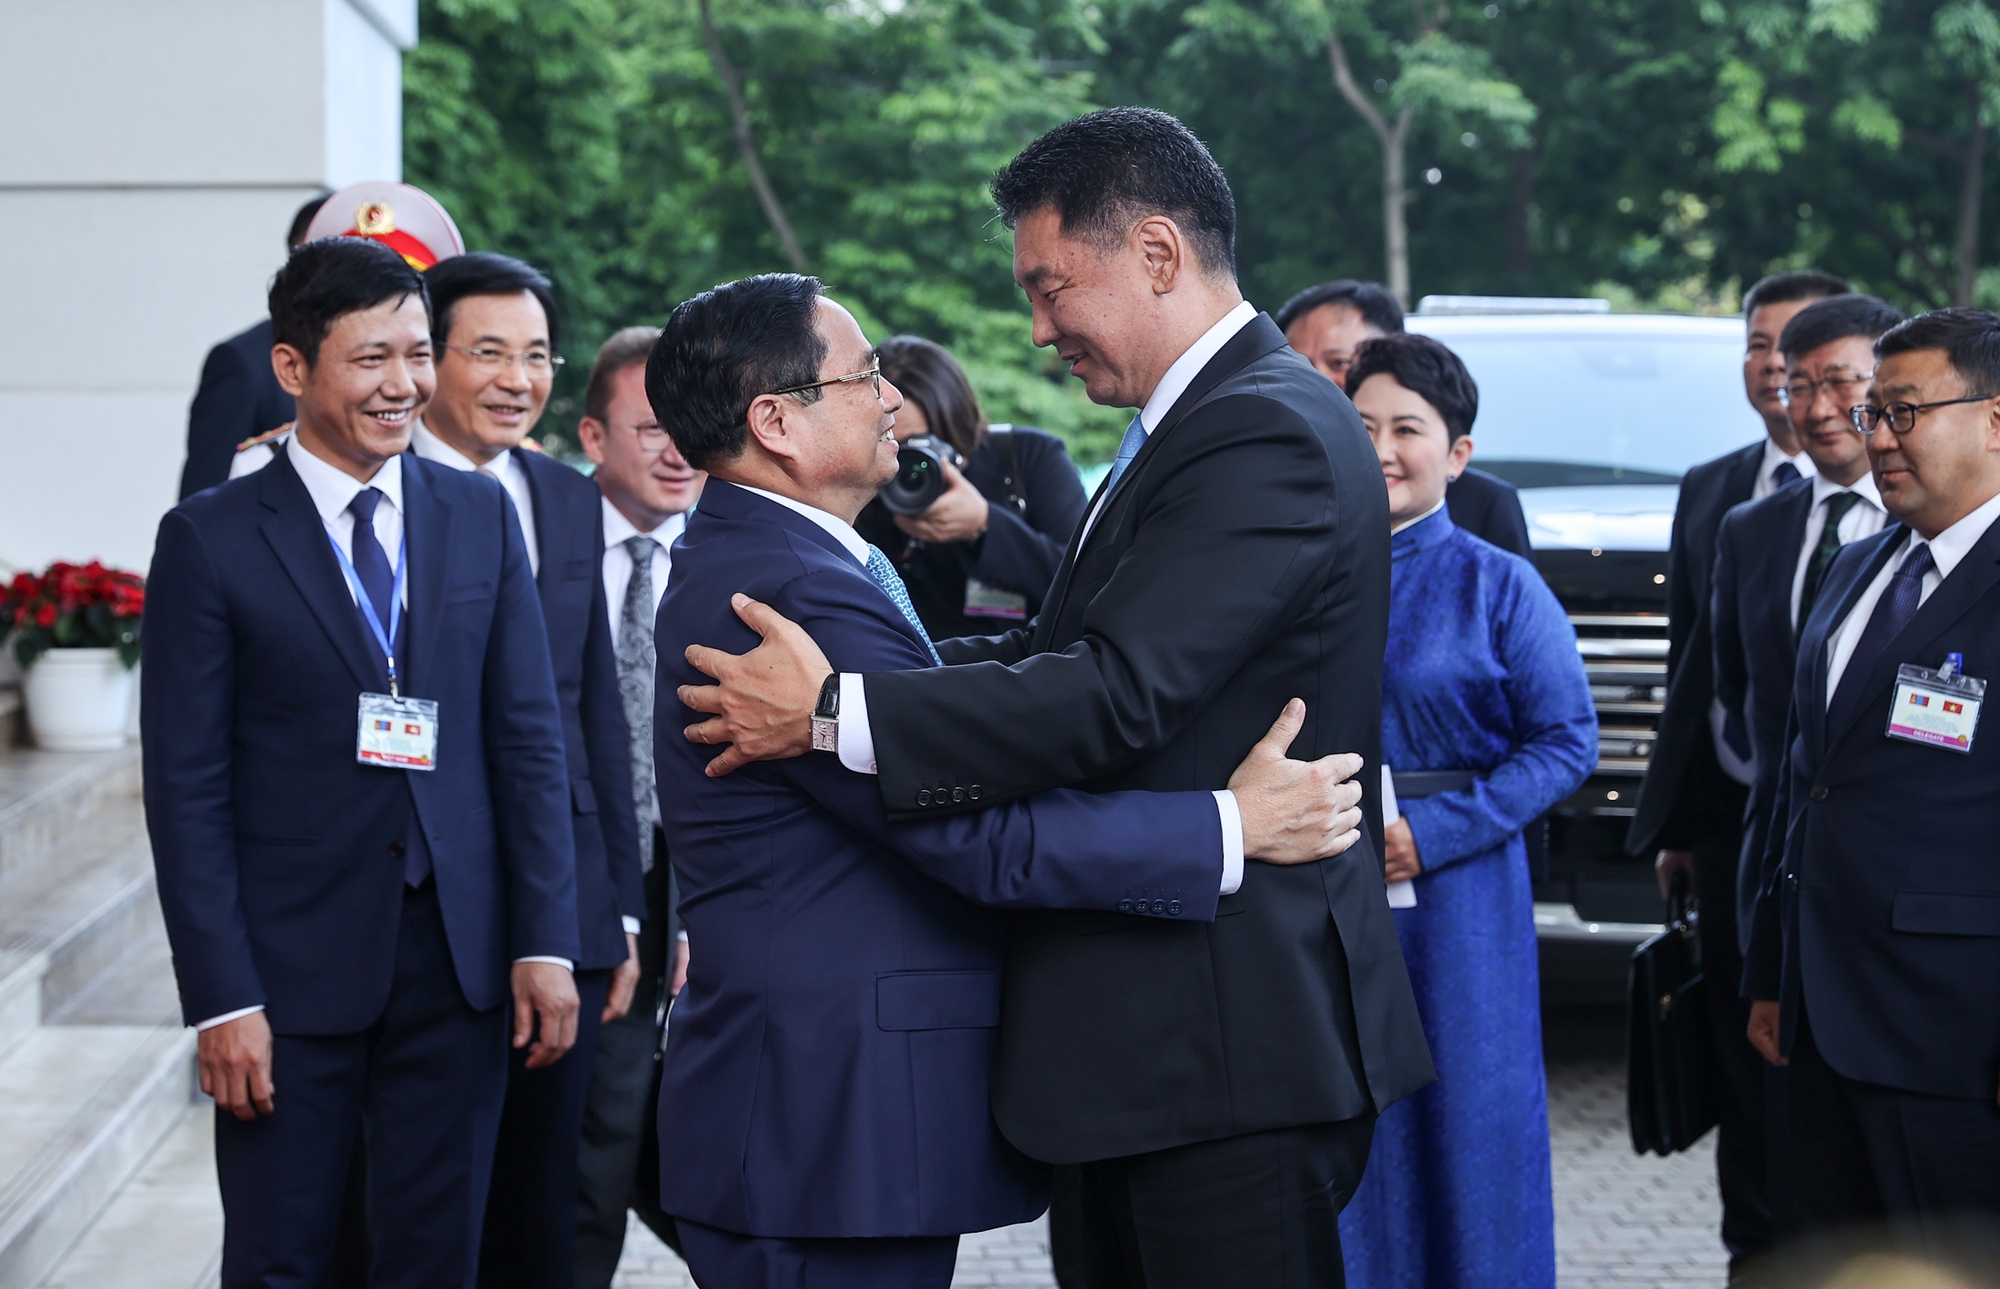 Thủ tướng Phạm Minh Chính nhiệt liệt chào mừng Tổng thống Mông Cổ Khurelsukh, Phu nhân và Đoàn đại biểu cấp cao Chính phủ Mông Cổ thăm cấp Nhà nước tới Việt Nam - Ảnh: VGP/Nhật Bắc